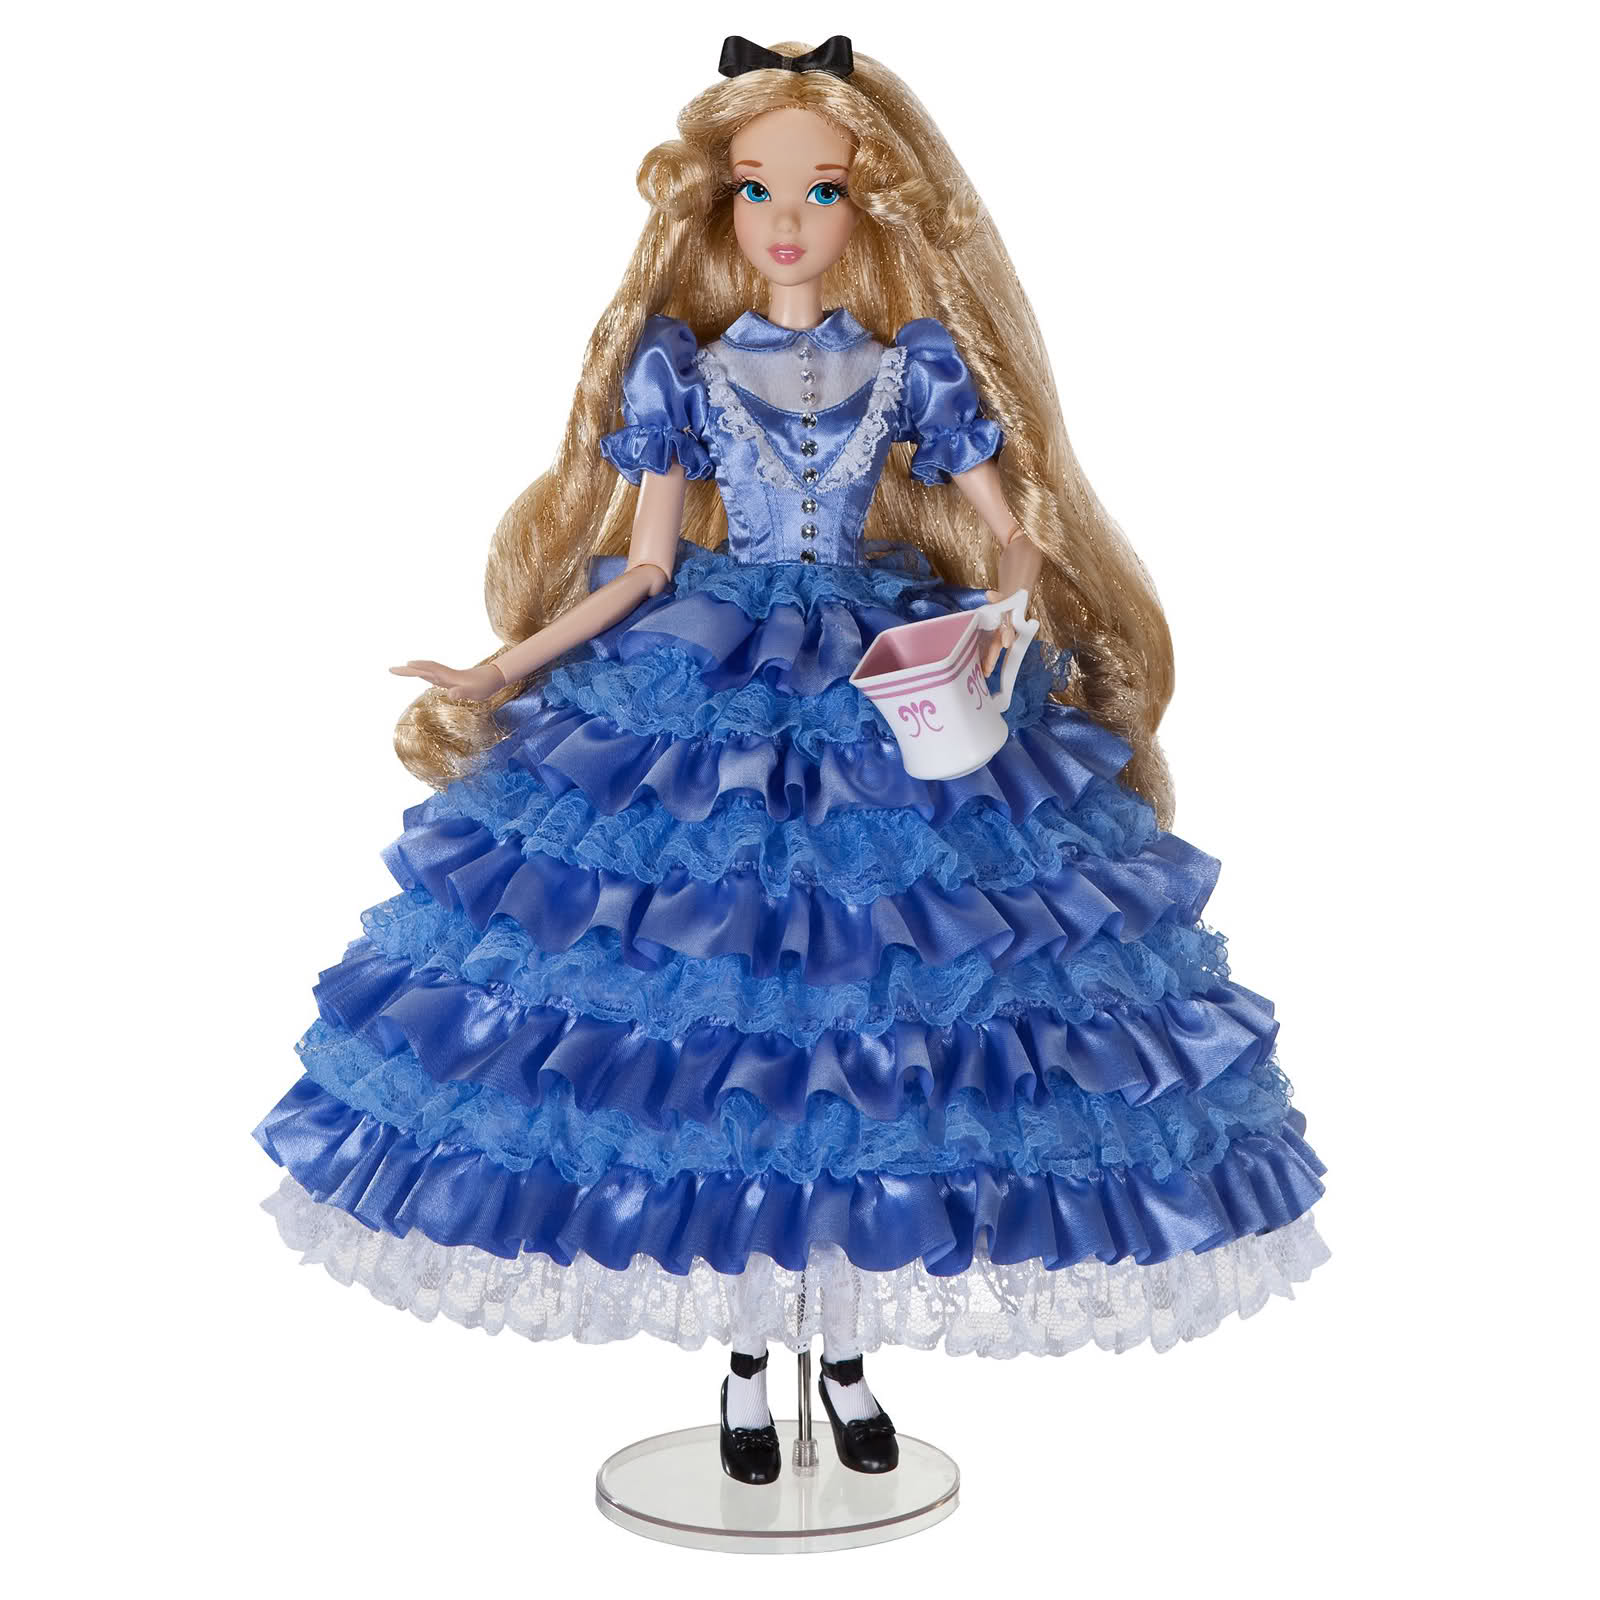 Alice buy. Куклы Дисней стор Алиса. Алиса в стране чудес кукла Дисней стор. Алиса лимитированная кукла Дисней. Кукла Барби Алиса в стране чудес.